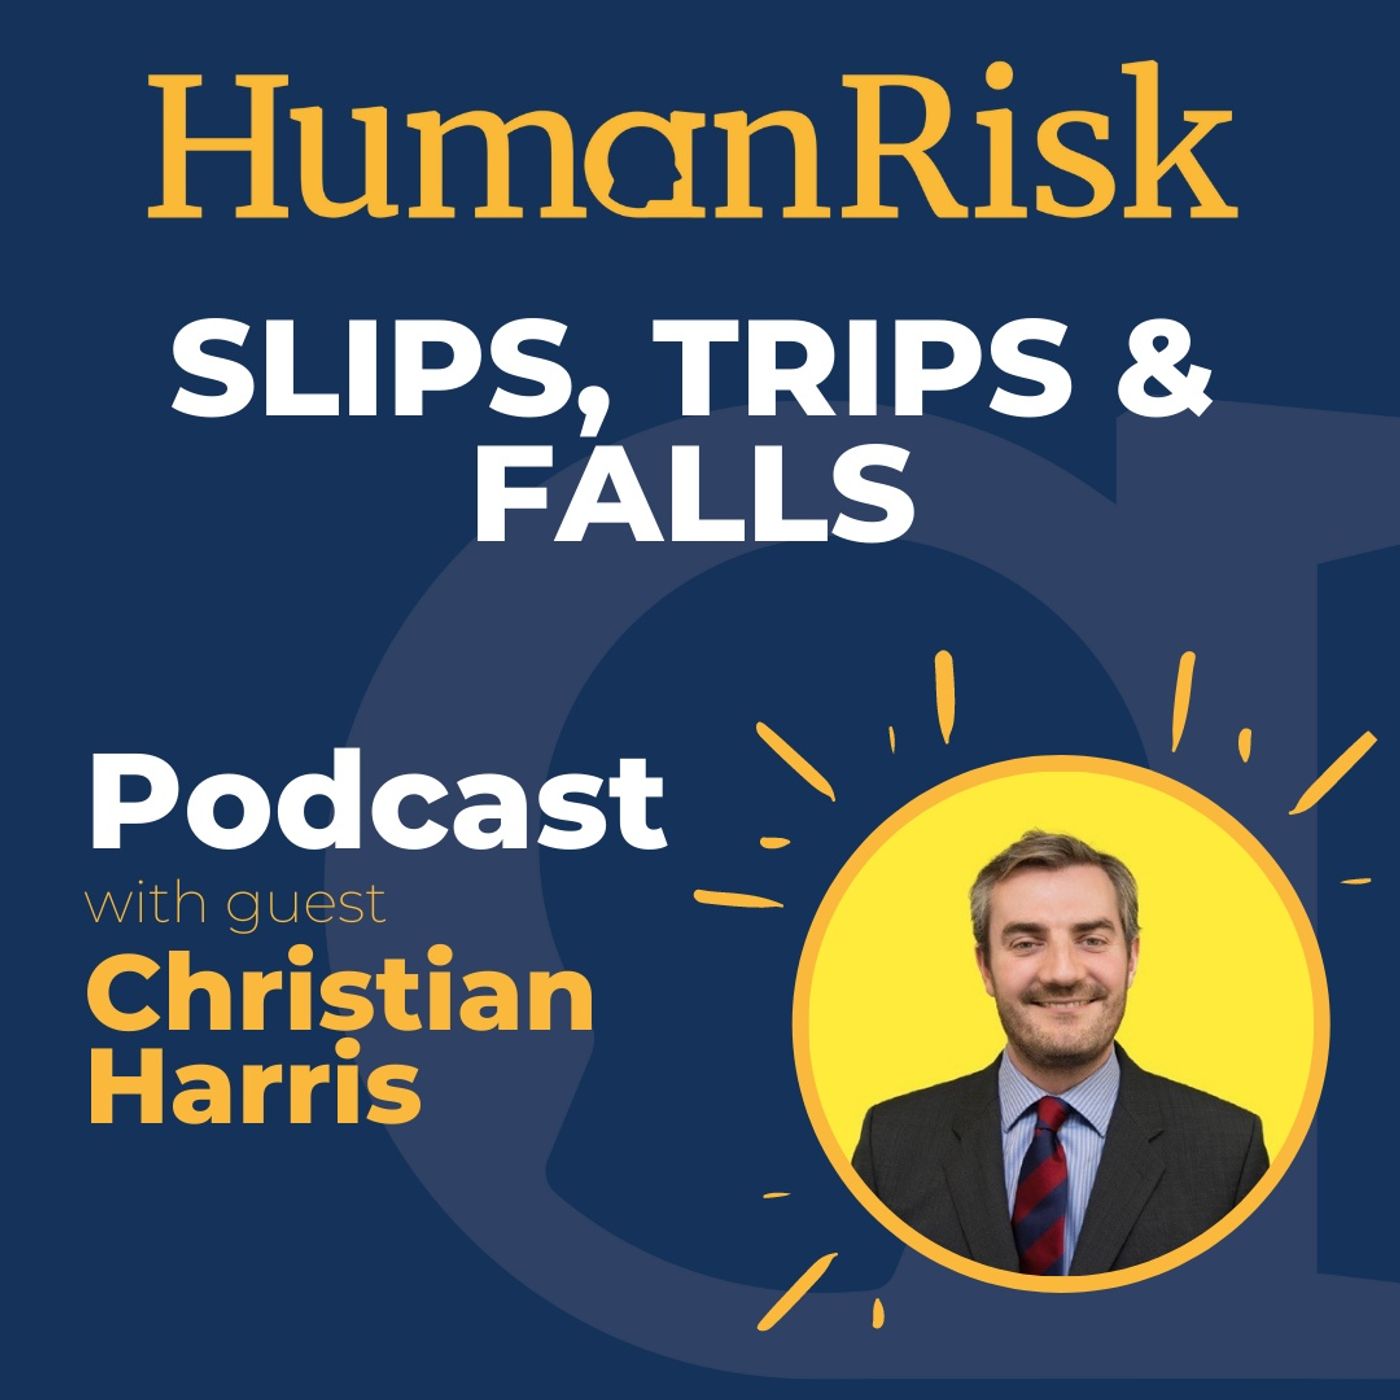 Christian Harris on Slips, Trips & Falls